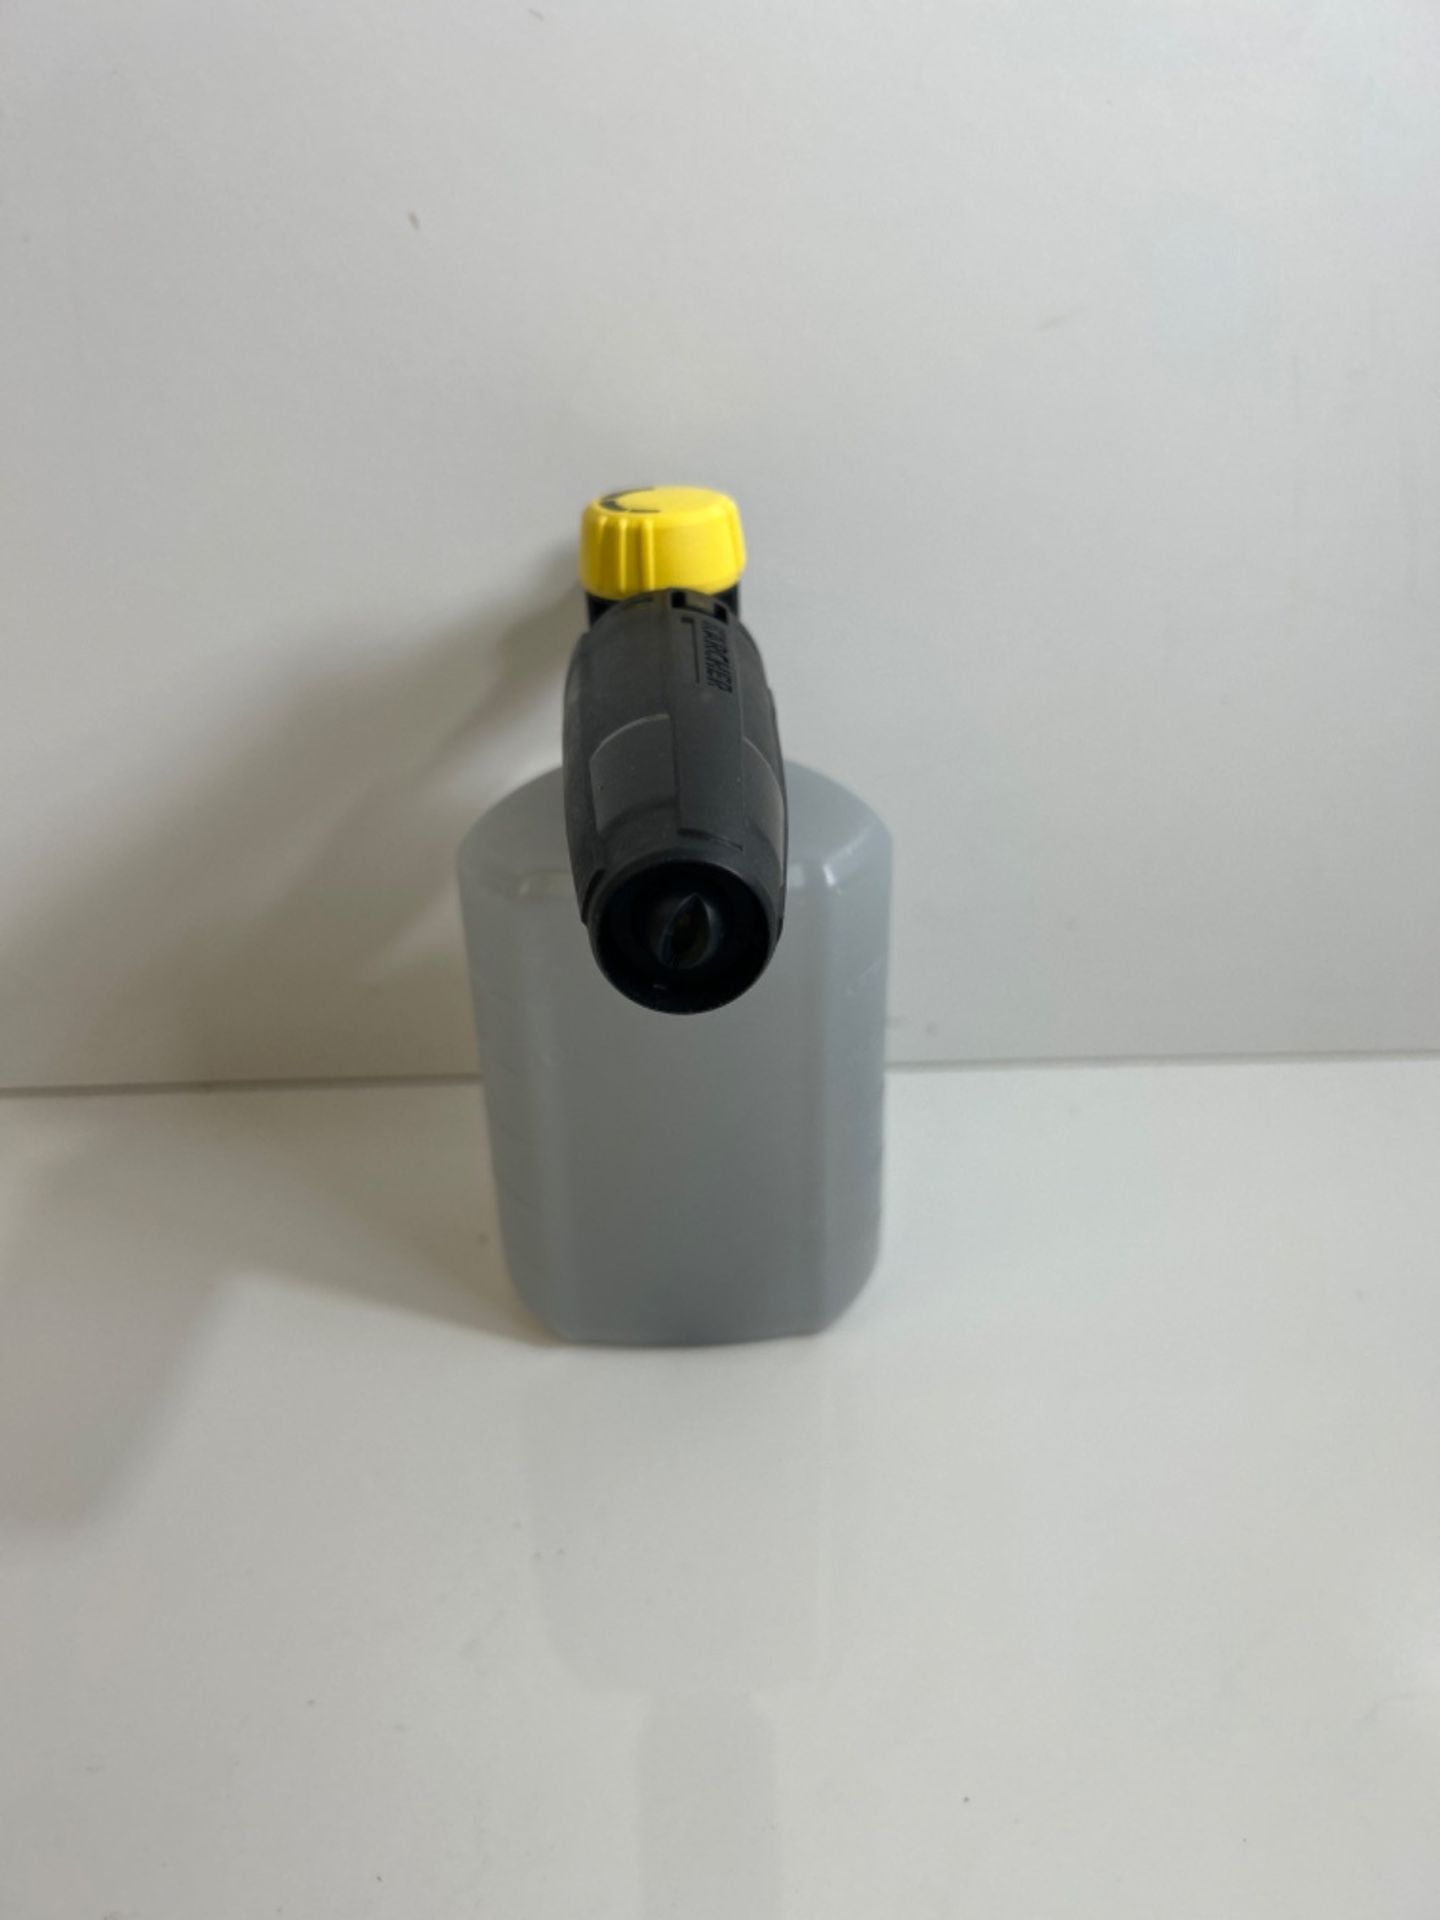 Kãrcher FJ6 Foam Nozzle - Pressure Washer Accessory,Multi,0.6L - Image 3 of 3